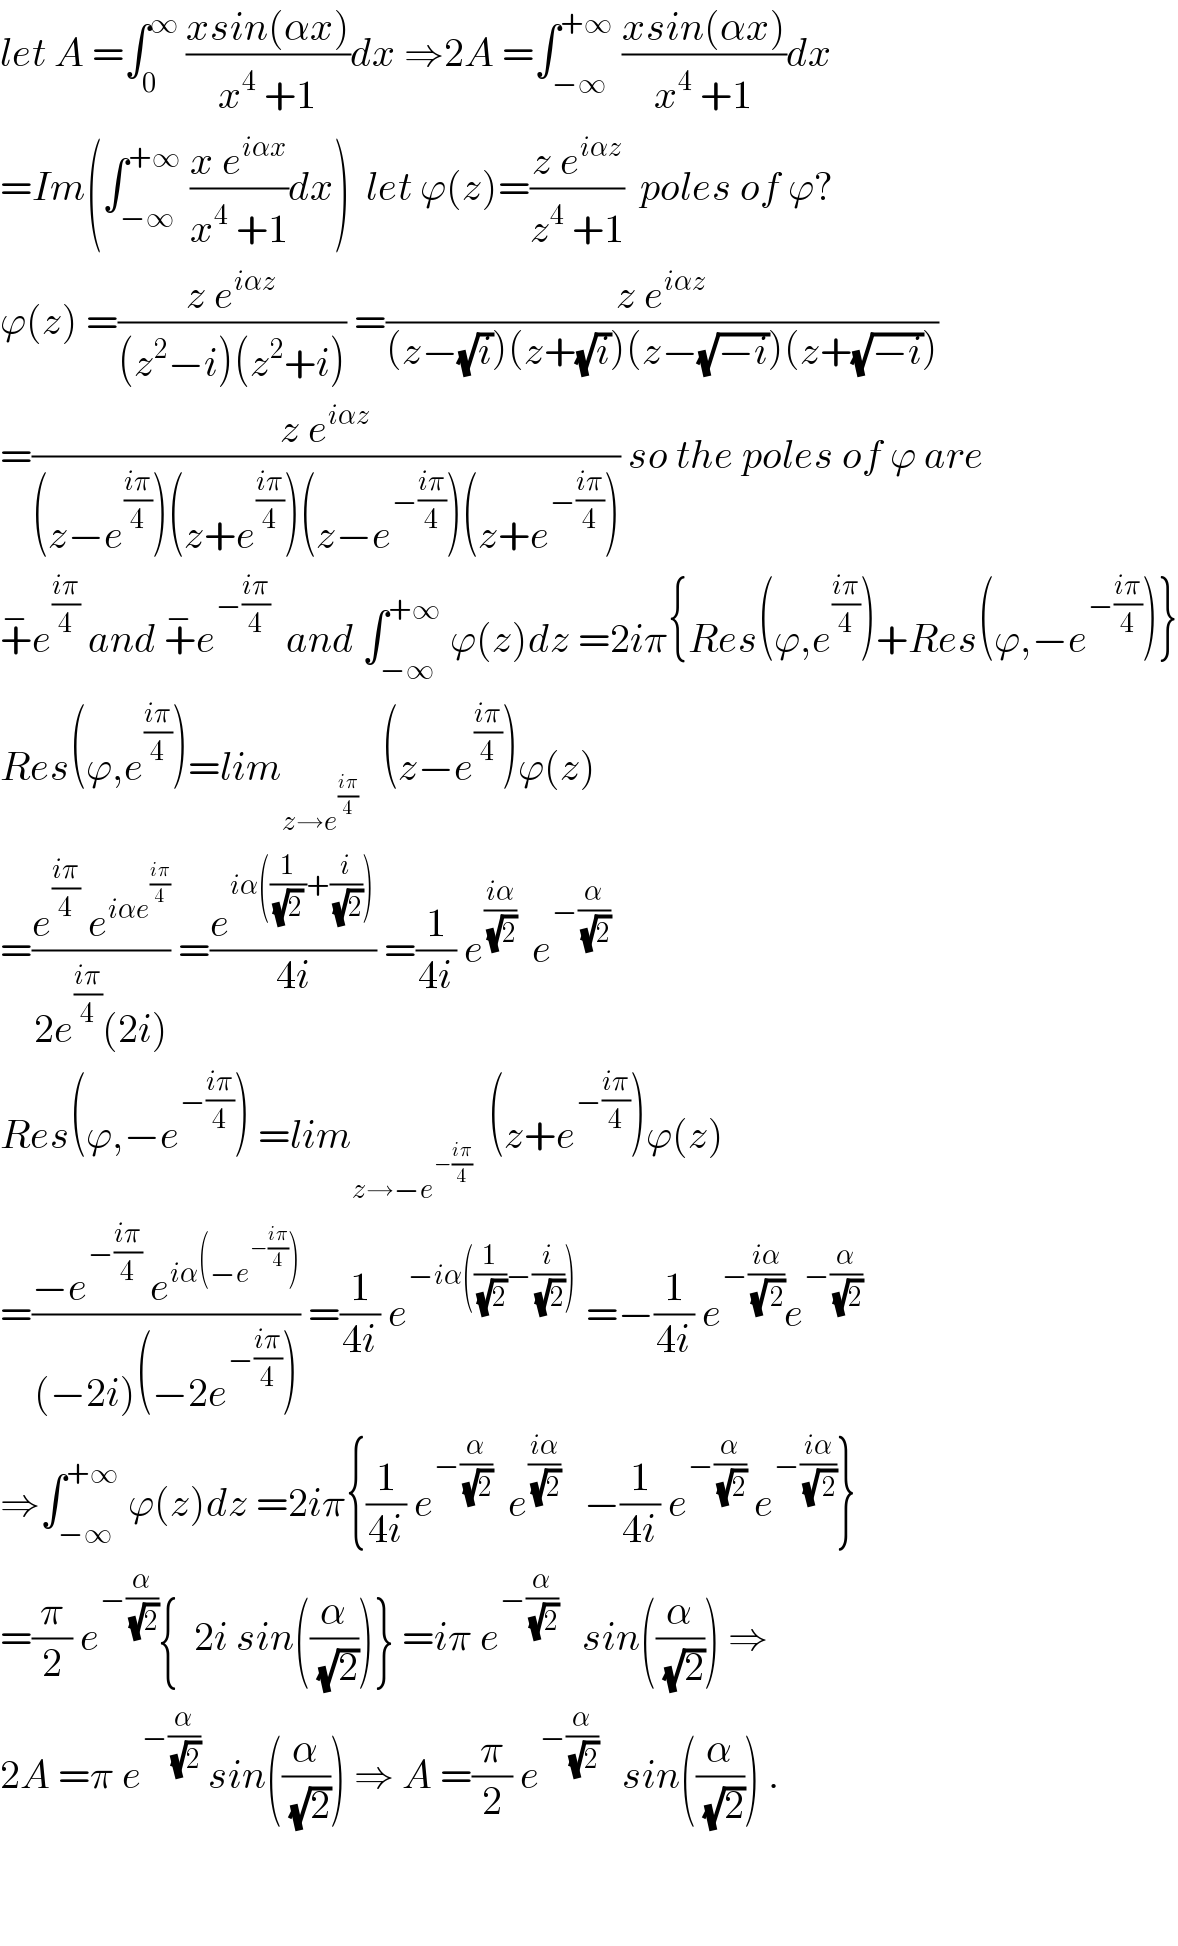 let A =∫_0 ^∞  ((xsin(αx))/(x^4  +1))dx ⇒2A =∫_(−∞) ^(+∞)  ((xsin(αx))/(x^4  +1))dx  =Im(∫_(−∞) ^(+∞)  ((x e^(iαx) )/(x^4  +1))dx)  let ϕ(z)=((z e^(iαz) )/(z^4  +1))  poles of ϕ?  ϕ(z) =((z e^(iαz) )/((z^2 −i)(z^2 +i))) =((z e^(iαz) )/((z−(√i))(z+(√i))(z−(√(−i)))(z+(√(−i)))))  =((z e^(iαz) )/((z−e^((iπ)/4) )(z+e^((iπ)/4) )(z−e^(−((iπ)/4)) )(z+e^(−((iπ)/4)) ))) so the poles of ϕ are  +^− e^((iπ)/4)  and +^− e^(−((iπ)/4))   and ∫_(−∞) ^(+∞)  ϕ(z)dz =2iπ{Res(ϕ,e^((iπ)/4) )+Res(ϕ,−e^(−((iπ)/4)) )}  Res(ϕ,e^((iπ)/4) )=lim_(z→e^((iπ)/4) )    (z−e^((iπ)/4) )ϕ(z)  =((e^((iπ)/4)  e^(iαe^((iπ)/4) ) )/(2e^((iπ)/4) (2i))) =(e^(iα((1/((√2) ))+(i/(√2)))) /(4i)) =(1/(4i)) e^((iα)/(√2))   e^(−(α/(√2)))   Res(ϕ,−e^(−((iπ)/4)) ) =lim_(z→−e^(−((iπ)/4)) )   (z+e^(−((iπ)/4)) )ϕ(z)  =((−e^(−((iπ)/4))  e^(iα(−e^(−((iπ)/4)) )) )/((−2i)(−2e^(−((iπ)/4)) ))) =(1/(4i)) e^(−iα((1/(√2))−(i/(√2))))  =−(1/(4i)) e^(−((iα)/(√( 2)))) e^(−(α/(√2)))   ⇒∫_(−∞) ^(+∞)  ϕ(z)dz =2iπ{(1/(4i)) e^(−(α/(√2)))   e^((iα)/(√2))    −(1/(4i)) e^(−(α/(√2)))  e^(−((iα)/(√( 2)))) }  =(π/2) e^(−(α/(√2))) {  2i sin((α/(√2)))} =iπ e^(−(α/(√2)))    sin((α/(√2))) ⇒  2A =π e^(−(α/(√2)))  sin((α/(√2))) ⇒ A =(π/2) e^(−(α/(√2)))    sin((α/(√2))) .      